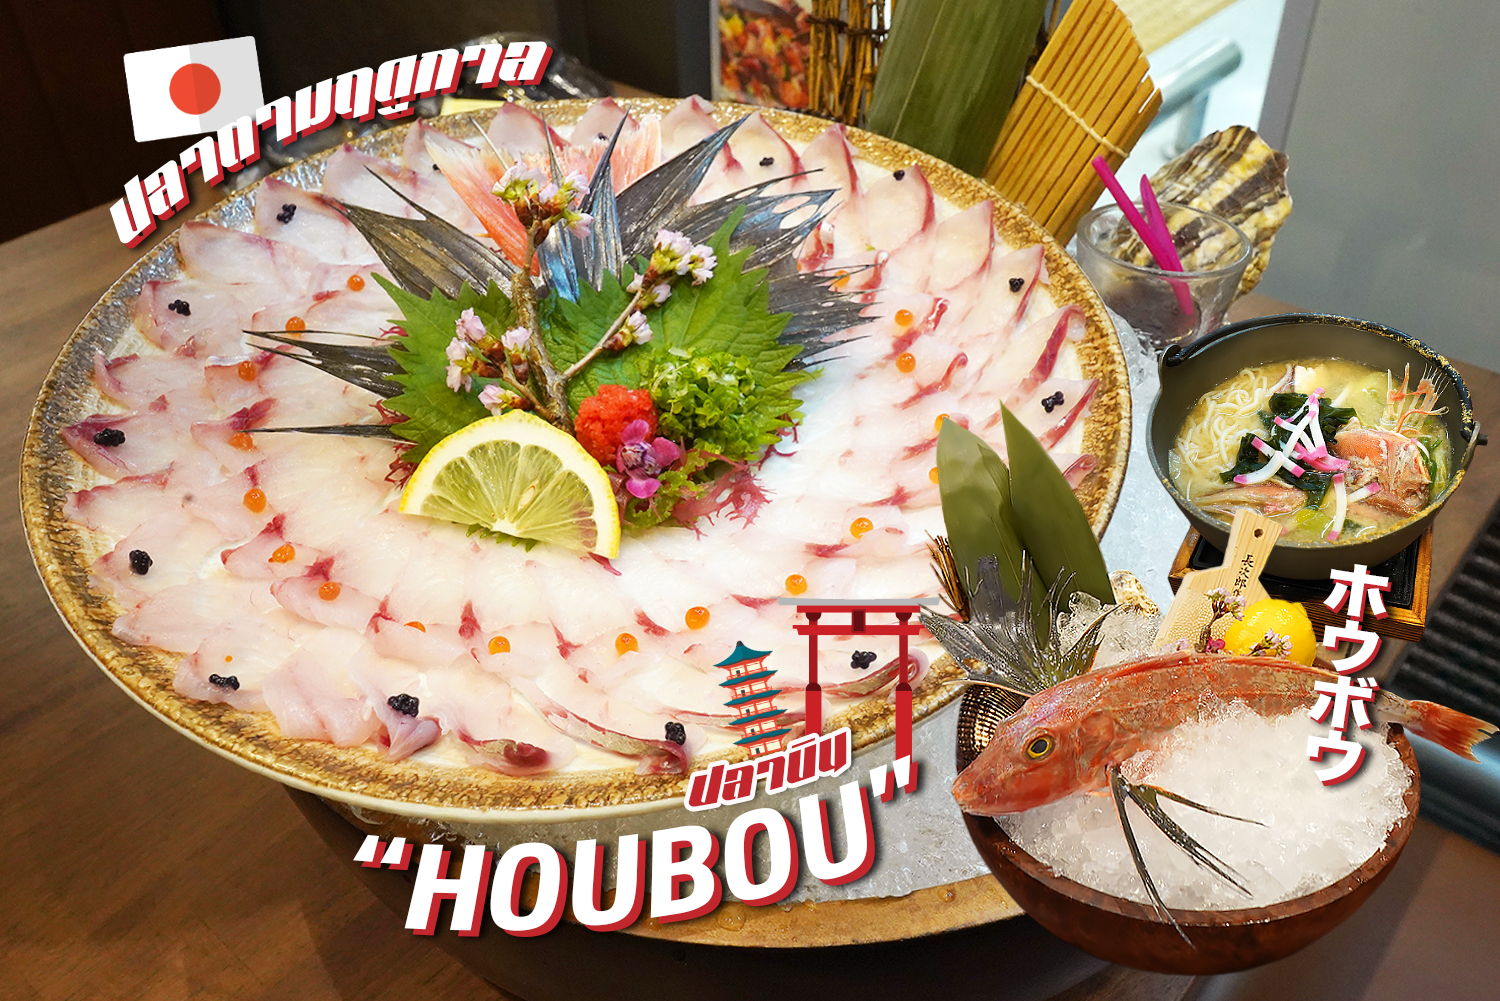 กินปลาบิน ปลาโฮโบะ (HOUBOU) ส่งตรงจากฟุกุโอะกะ (Fukuoka) หากินยาก สดใหม่วันต่อวัน @KABOCHA SUSHI ต้องลองซักครั้ง…